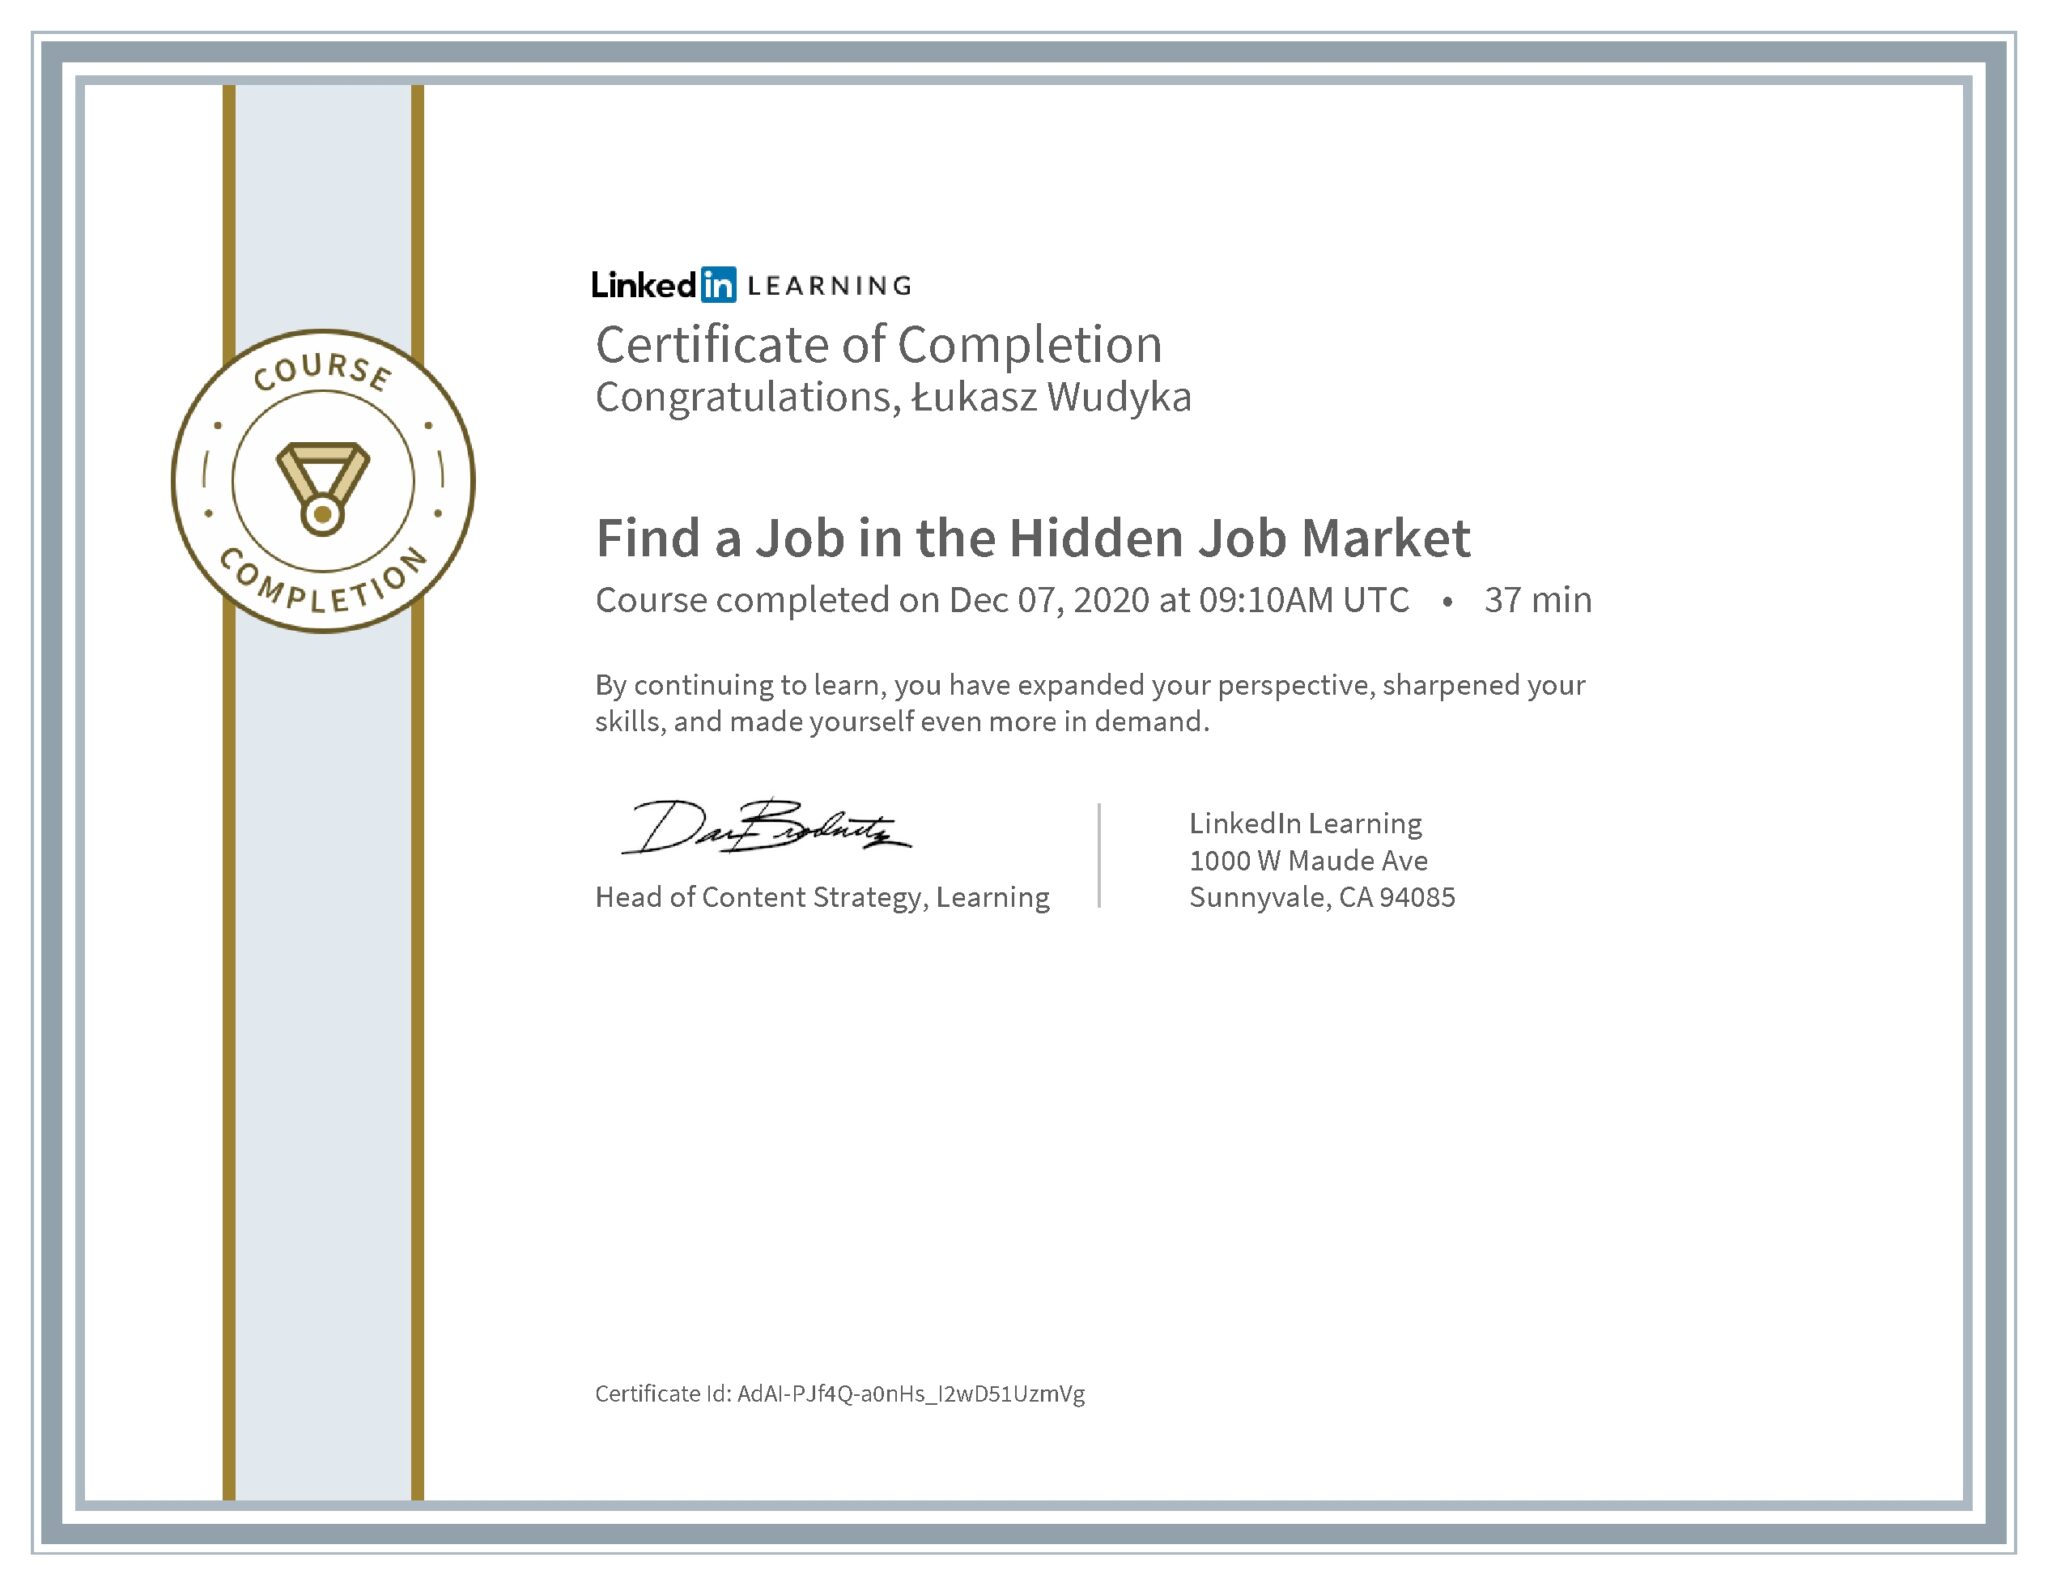 Łukasz Wudyka certyfikat LinkedIn Find a Job in the Hidden Job Market